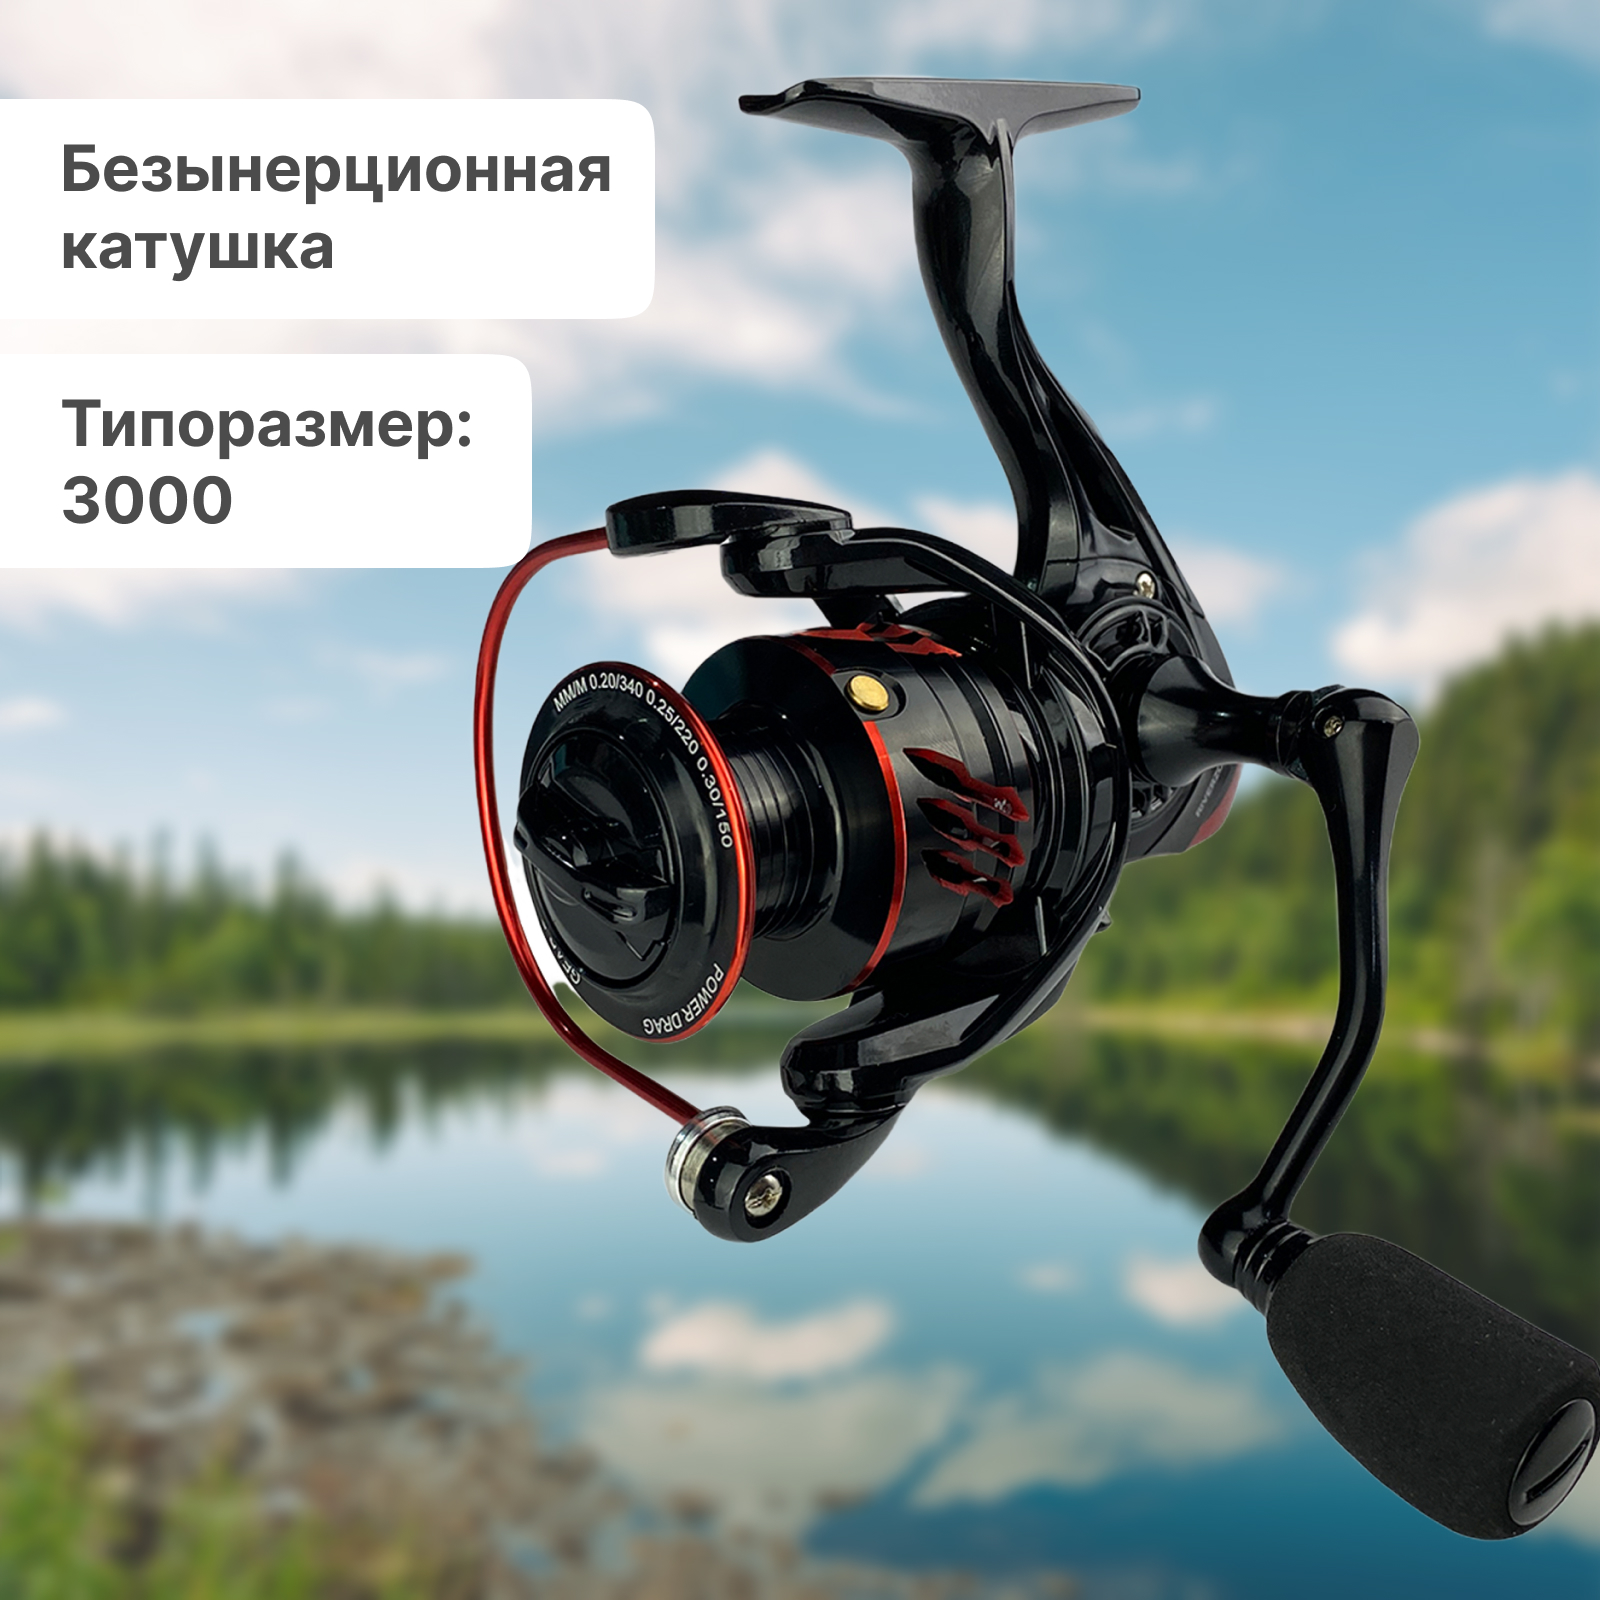 Катушка Riverzone Burevecnik JM3000 купить в интернет-магазине Huntworld.ru